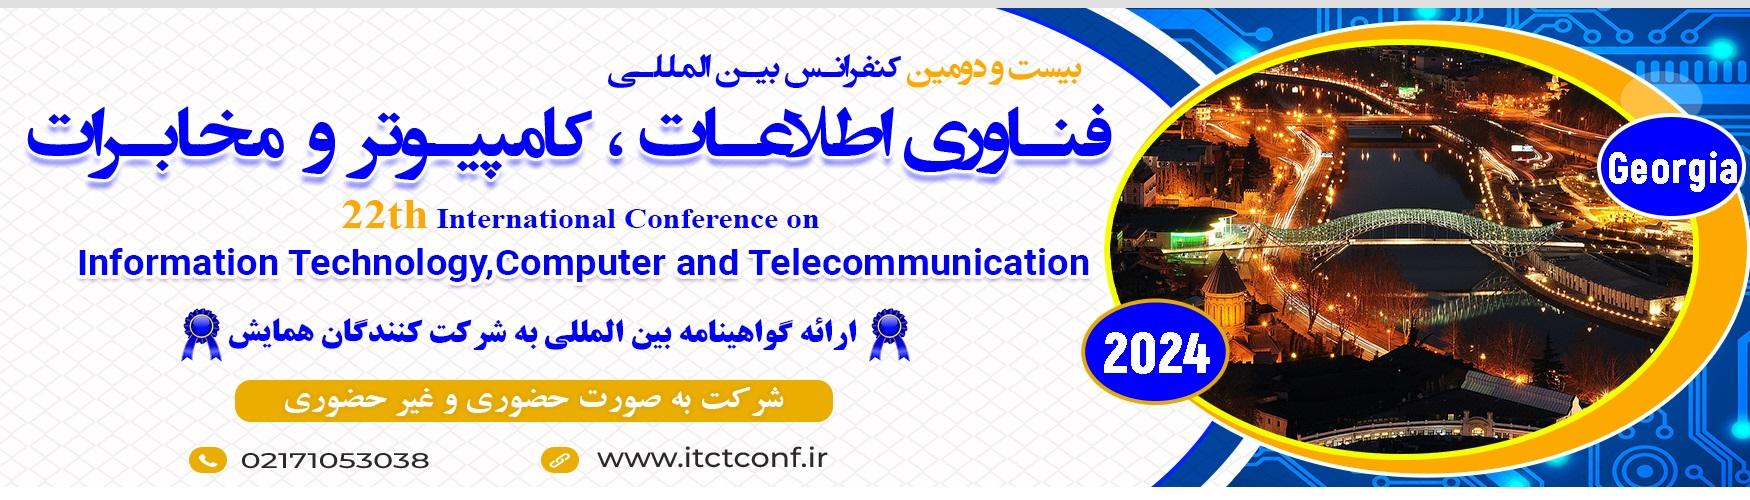 بیستمین کنفرانس بین المللی فناوری اطلاعات، کامپیوتر و مخابرات